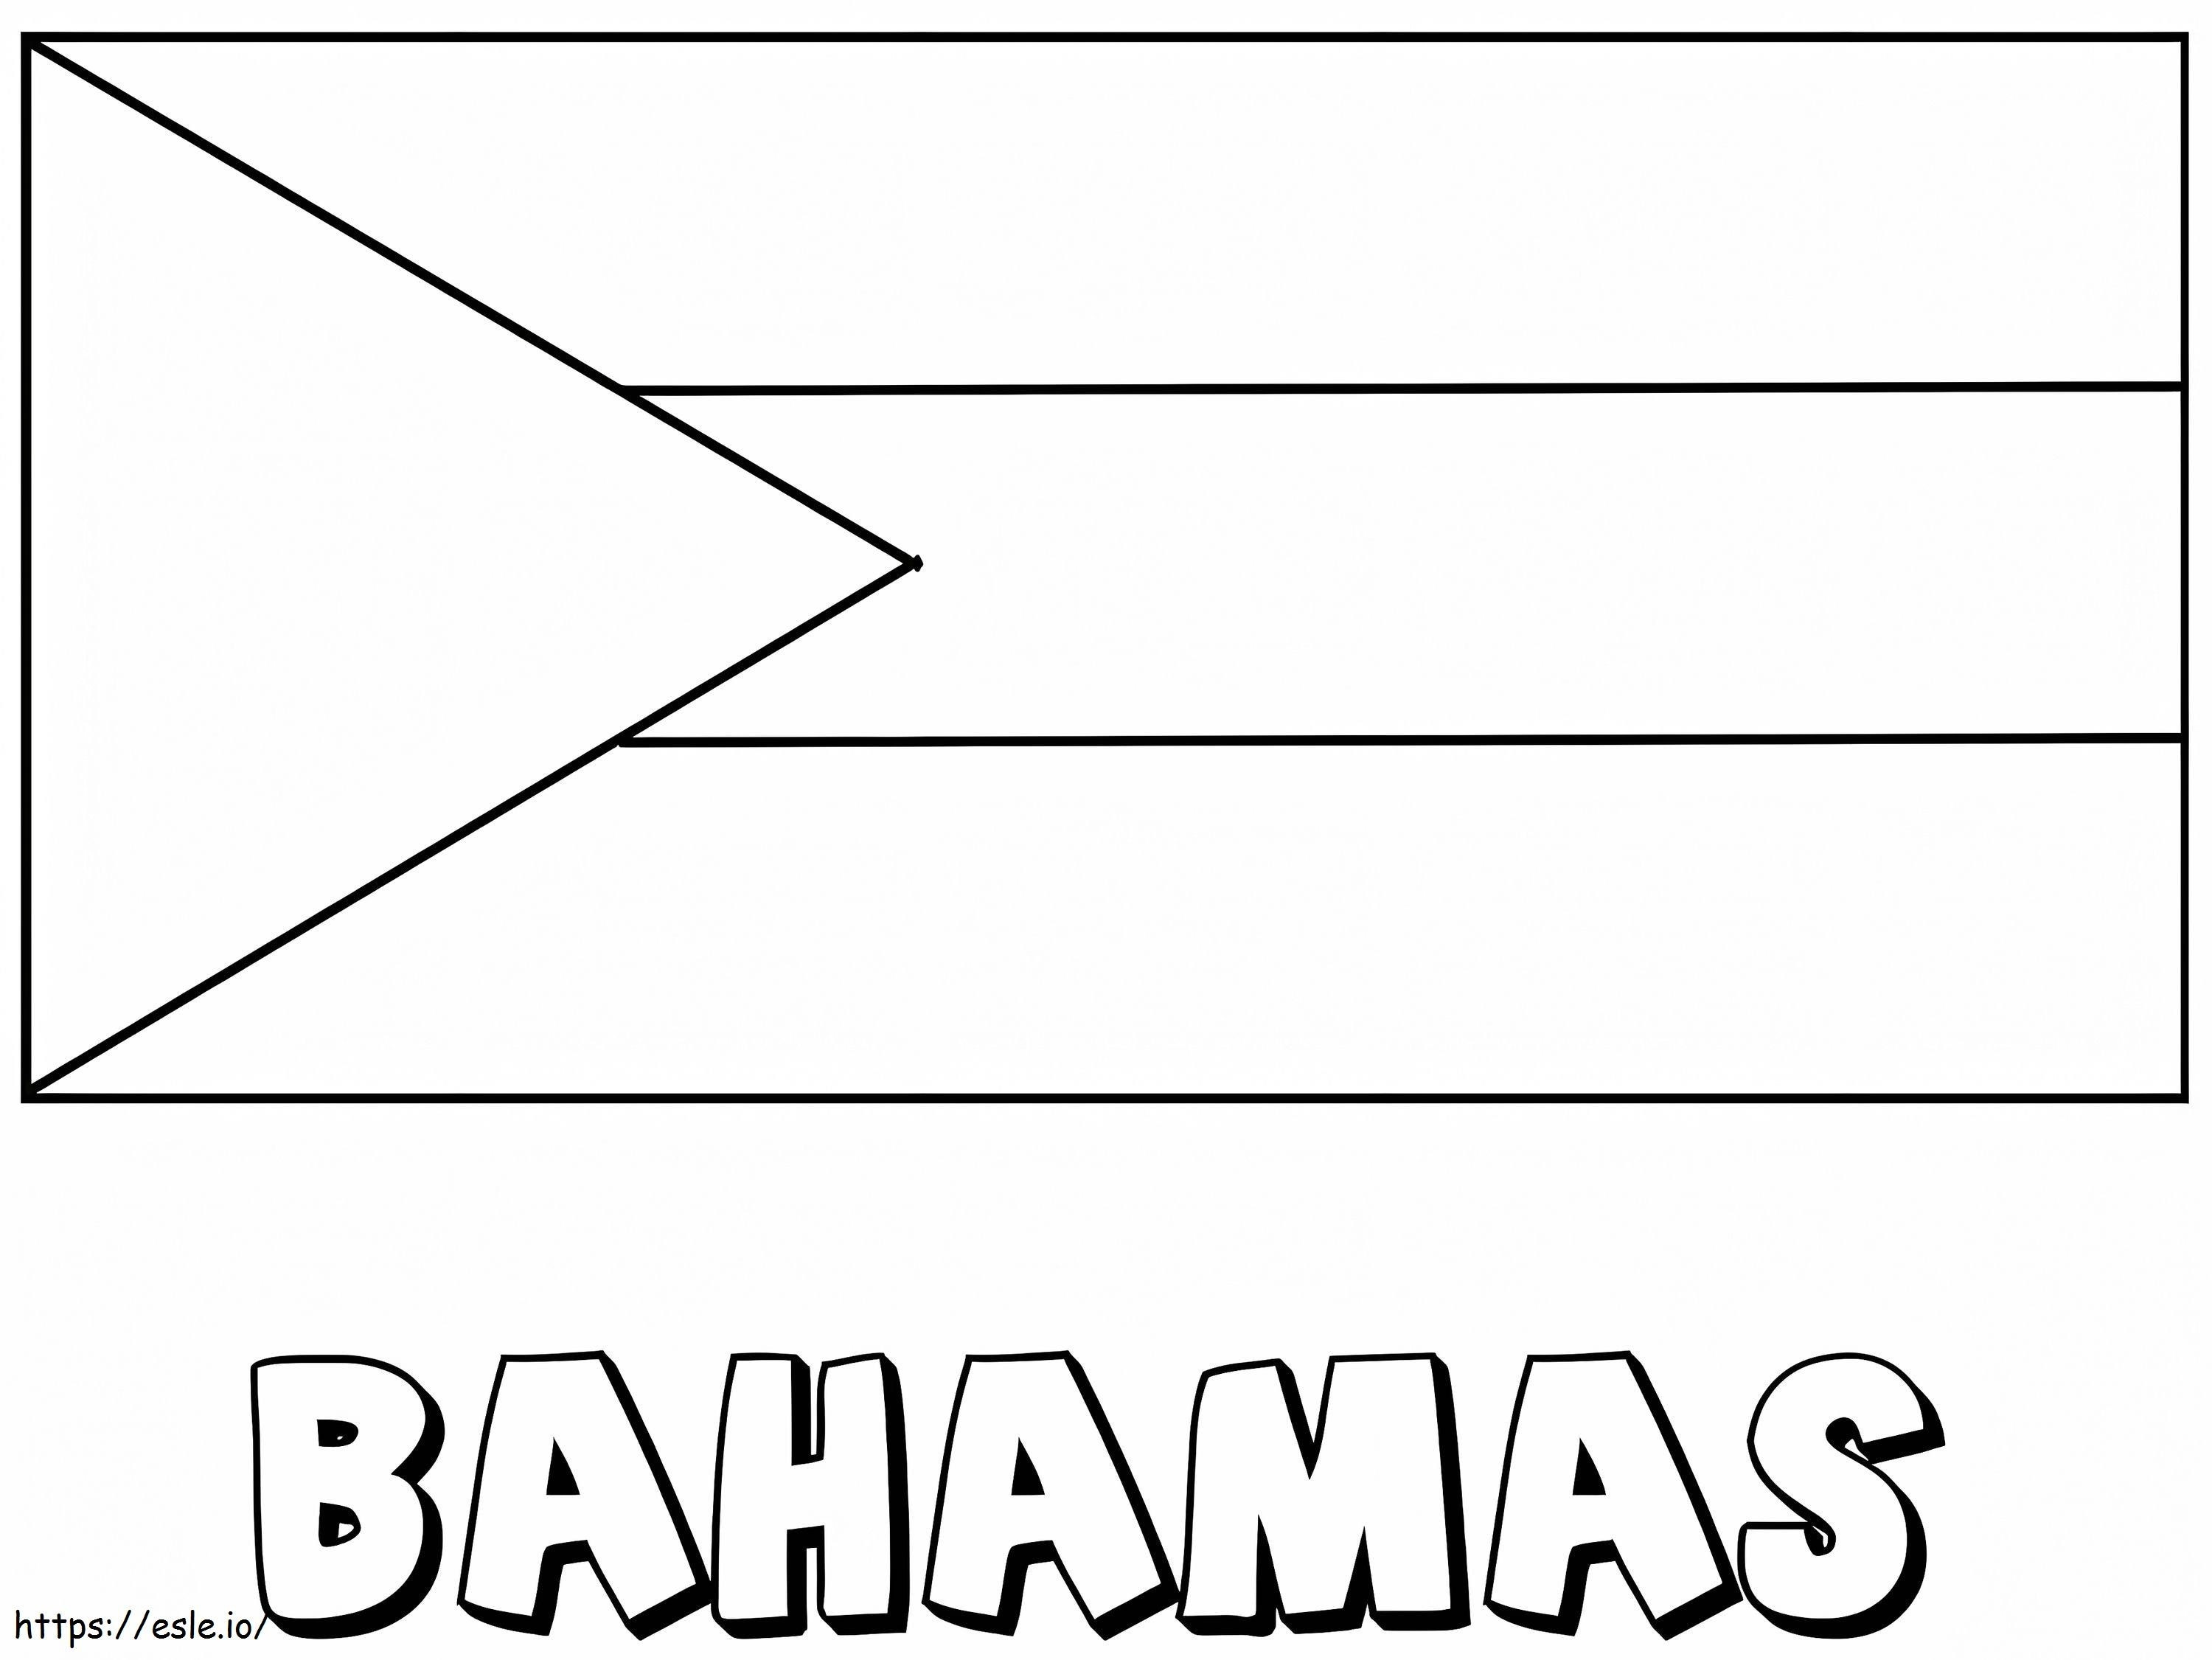 Bandeira das Bahamas para colorir